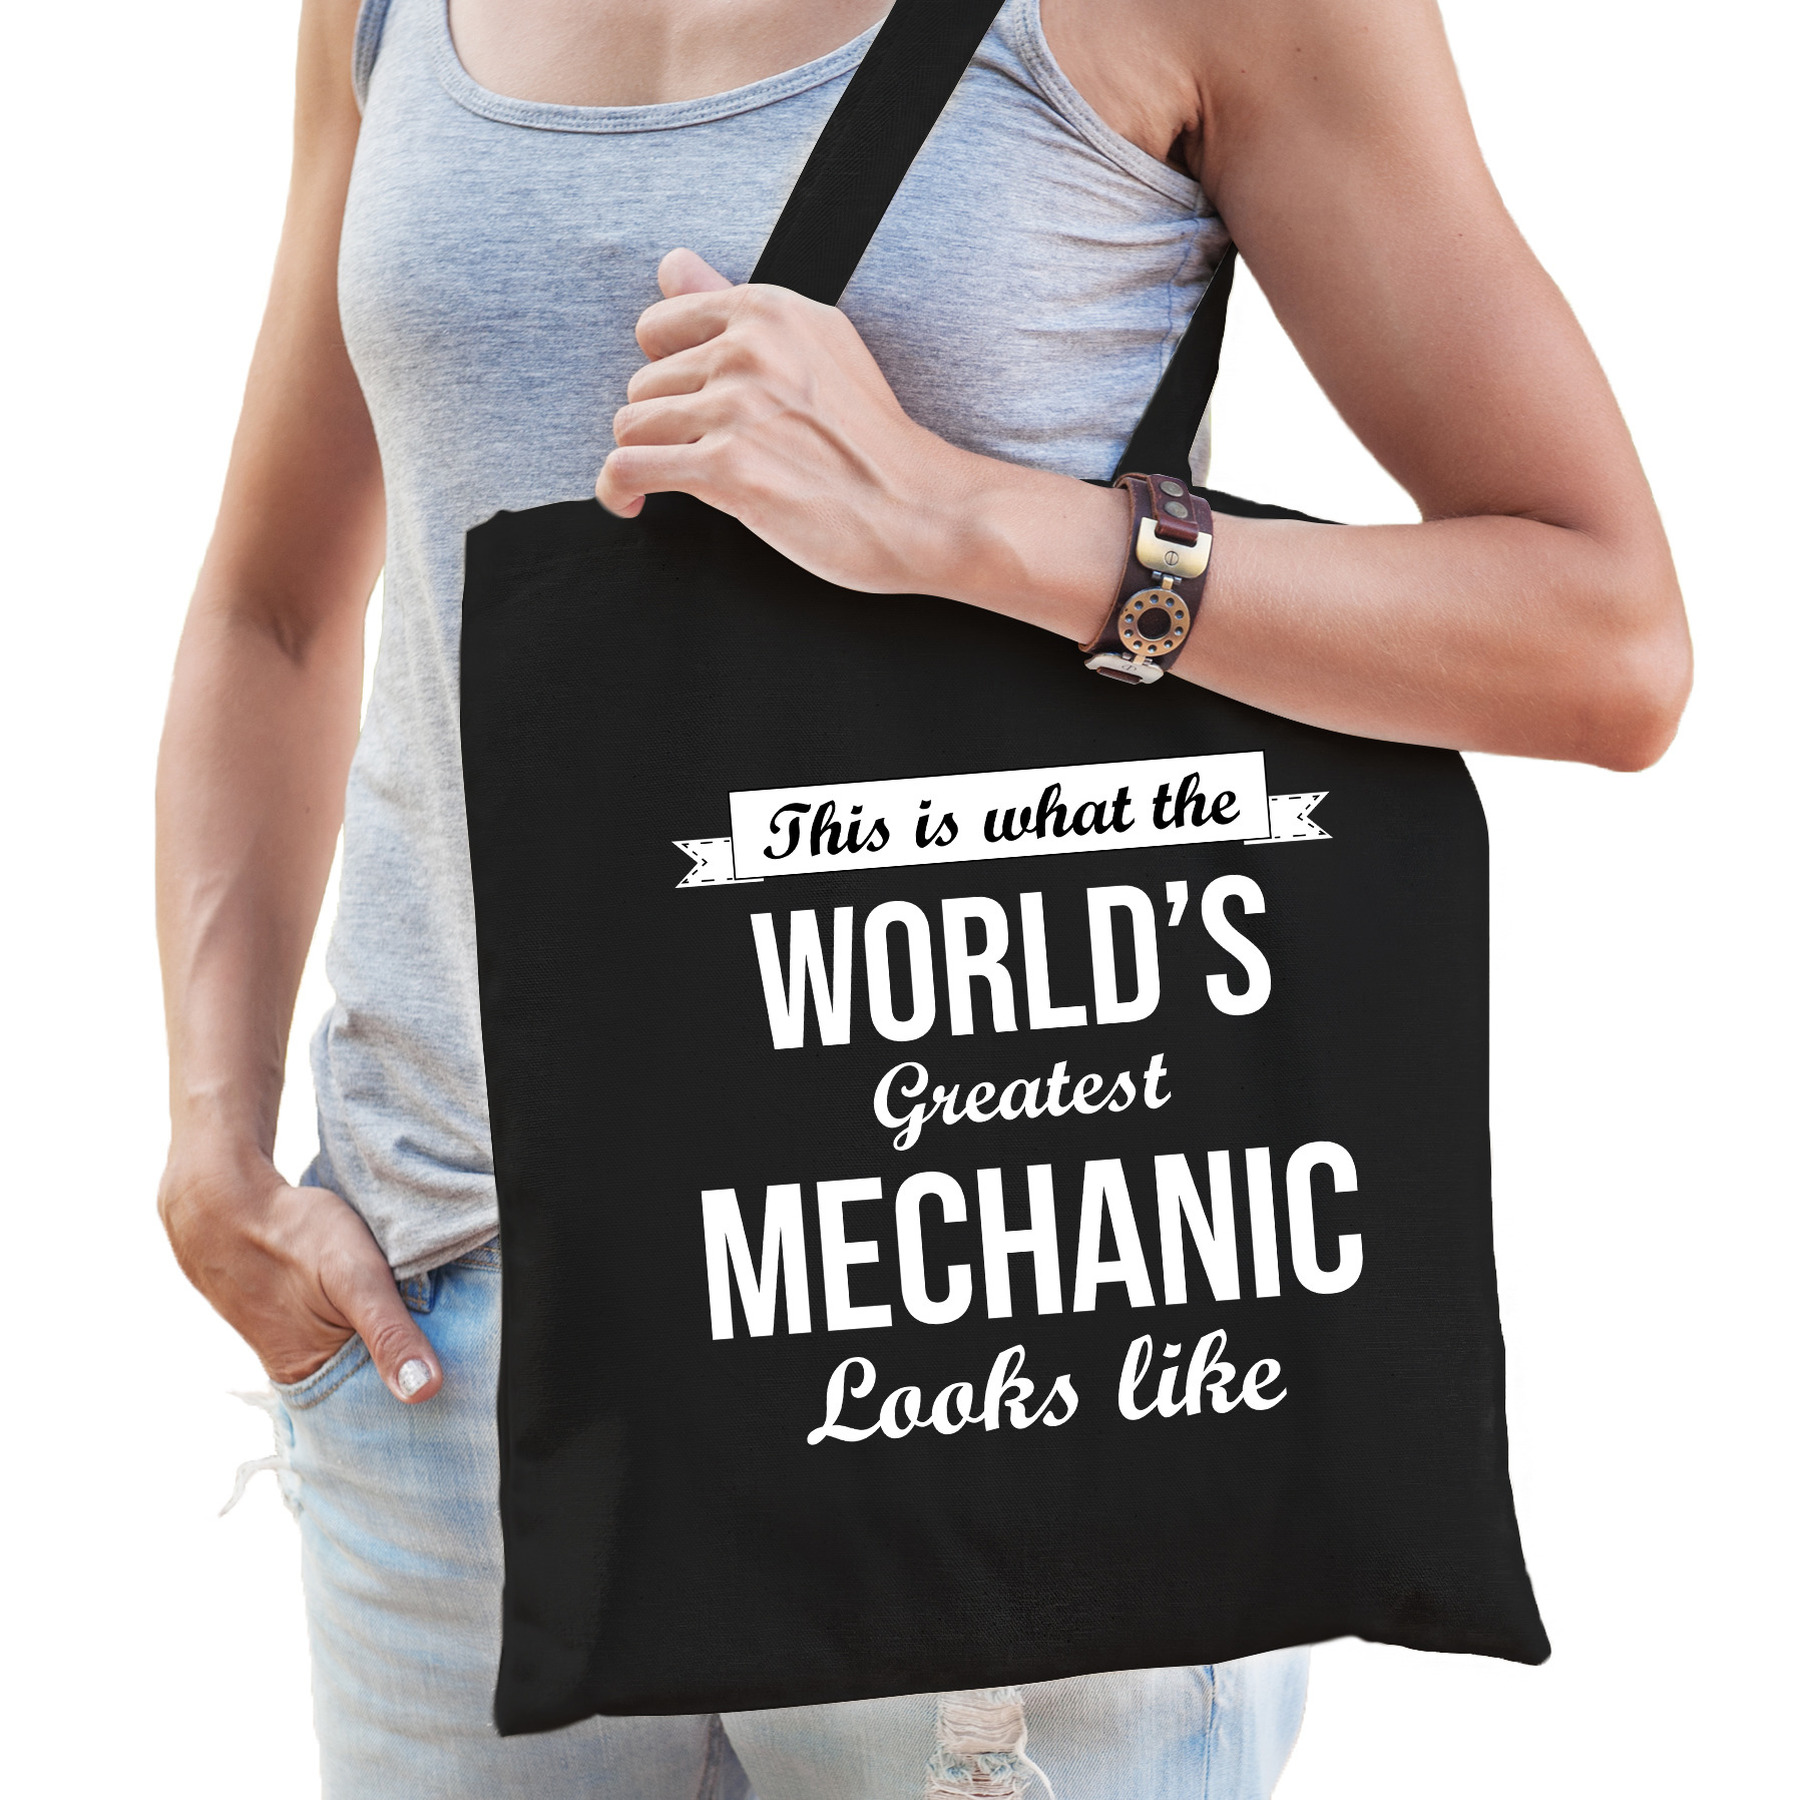 Worlds greatest mechanic tas zwart volwassenen - werelds beste monteur cadeau tas